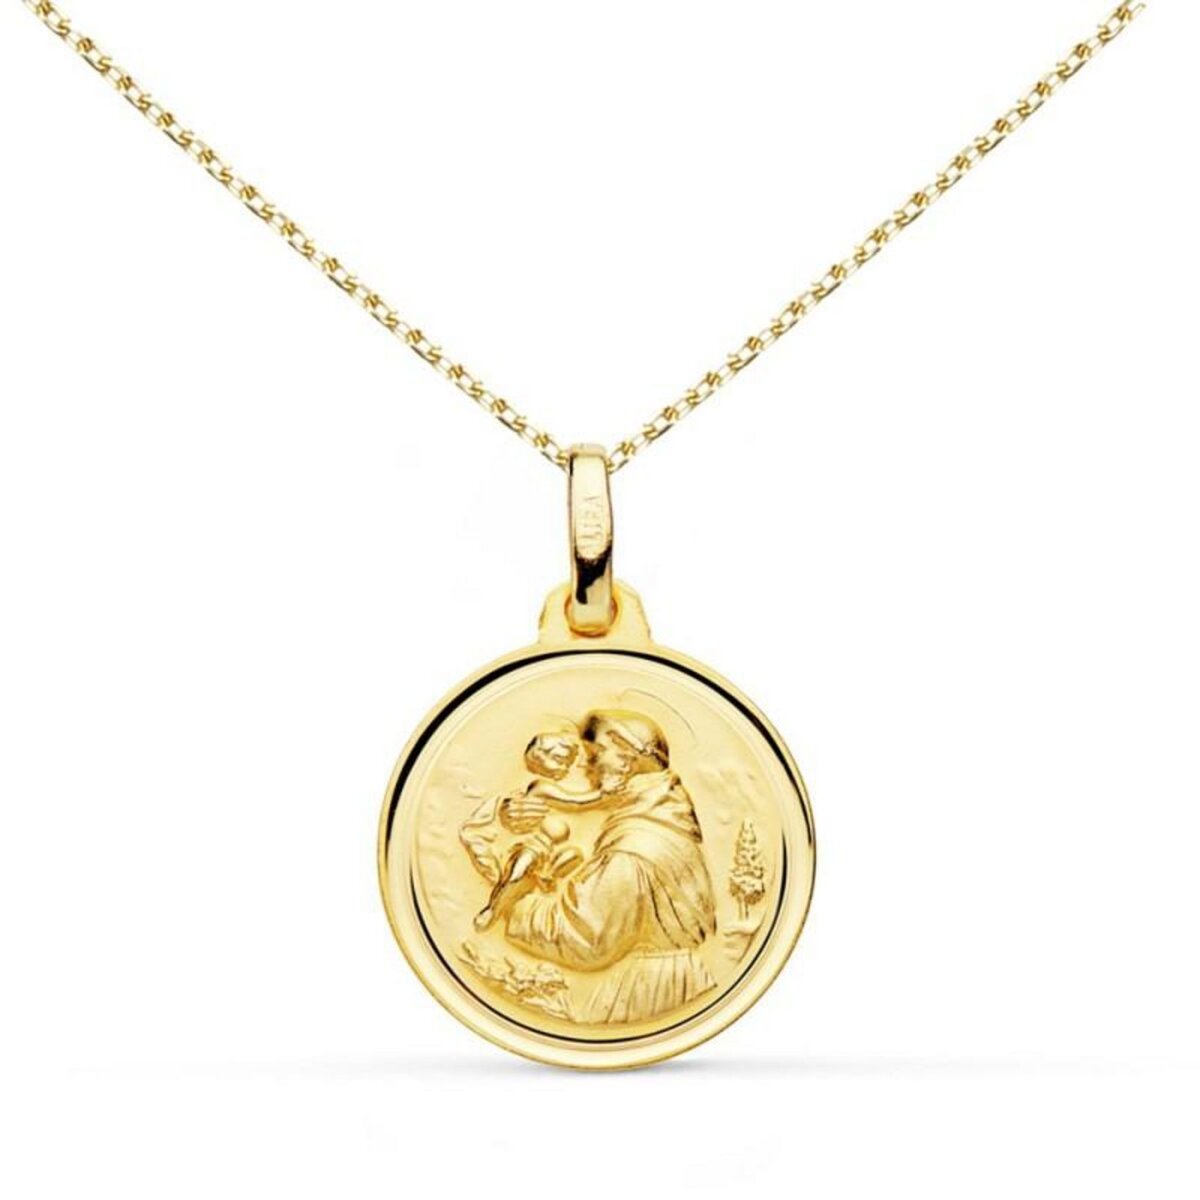 L'ATELIER D'AZUR Collier - Médaille Or 18 Carats 750/1000 Saint Antoine de Padoue - Chaîne Dorée - Gravure Offerte